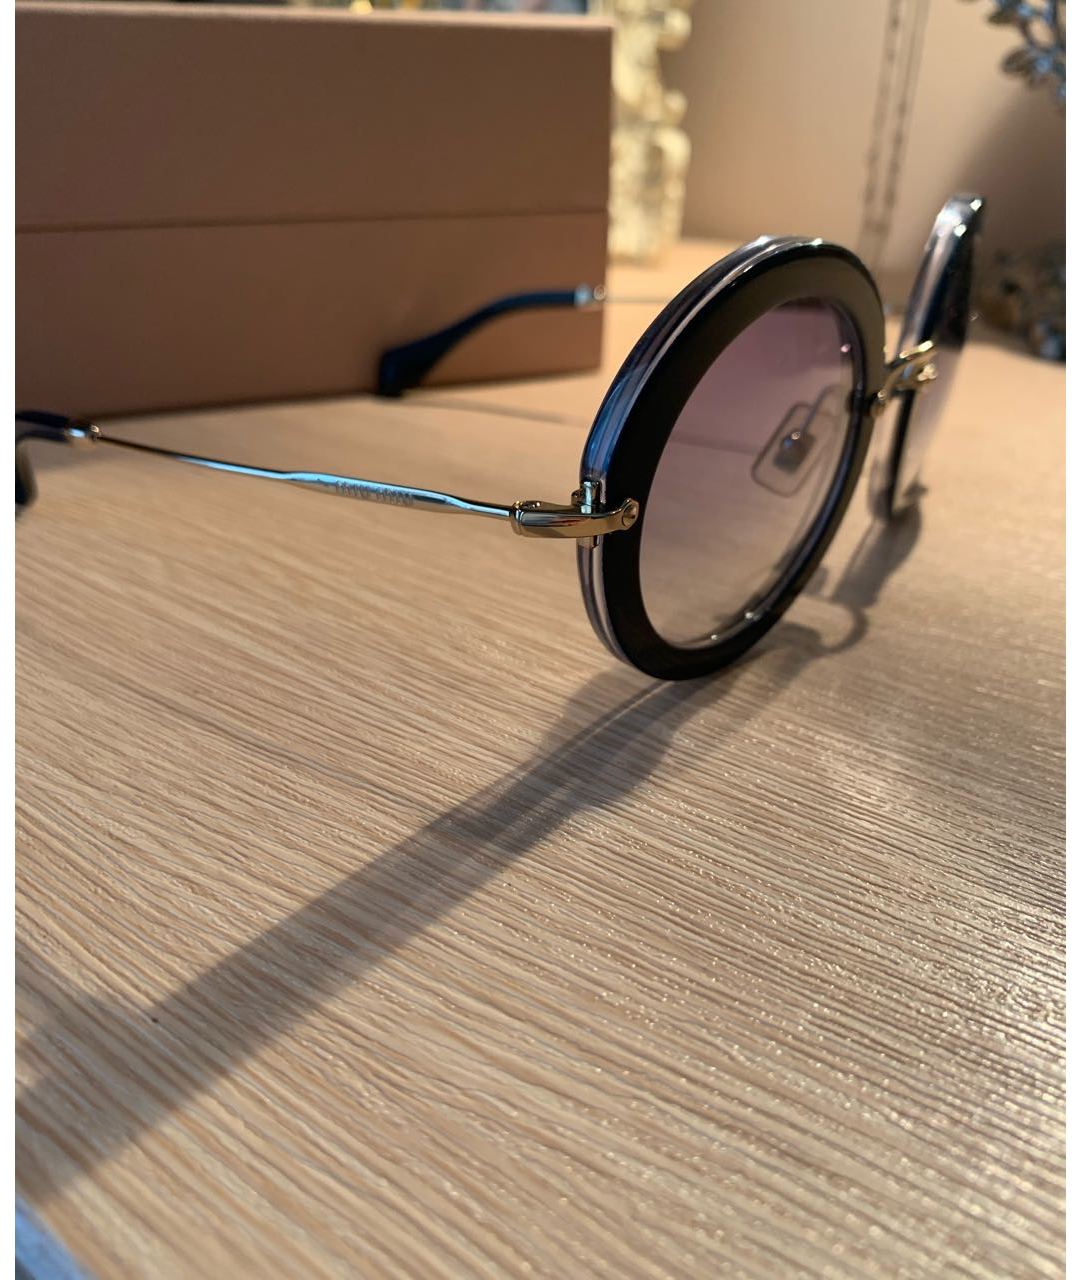 MIU MIU Синие пластиковые солнцезащитные очки, фото 2